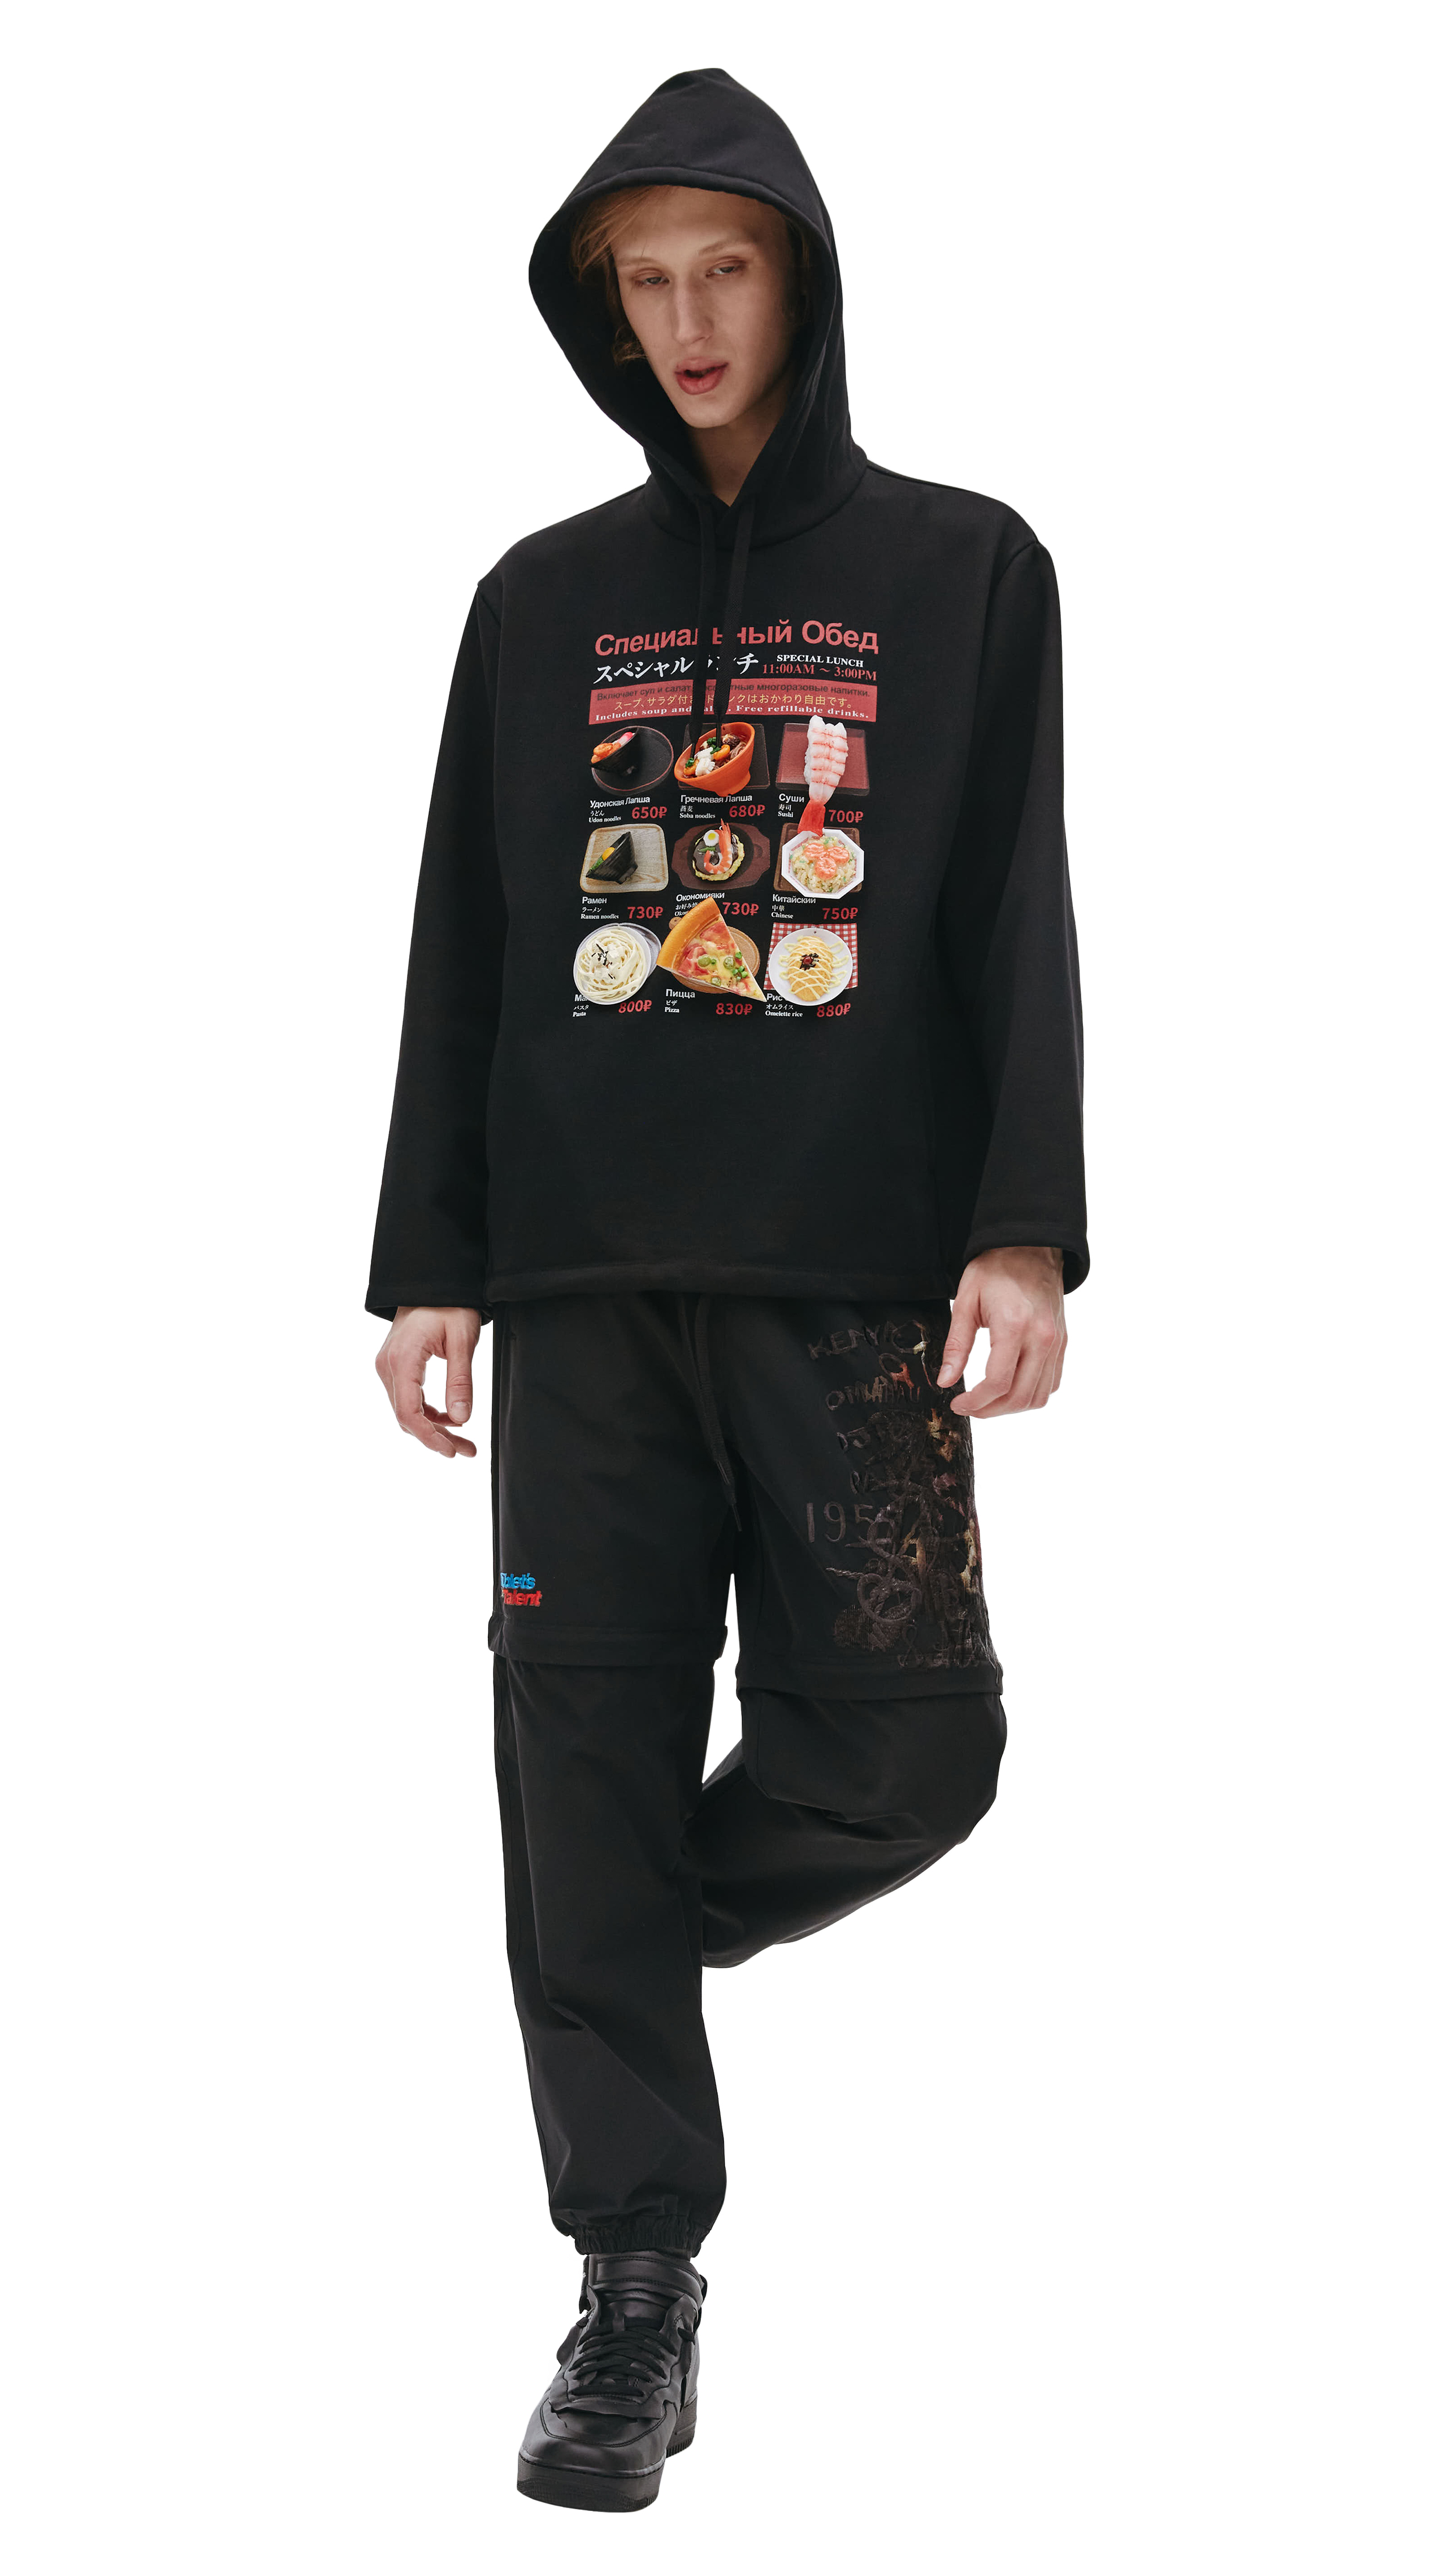 Buy Doublet men black hoodie doublet x sv for $715 online on SV77